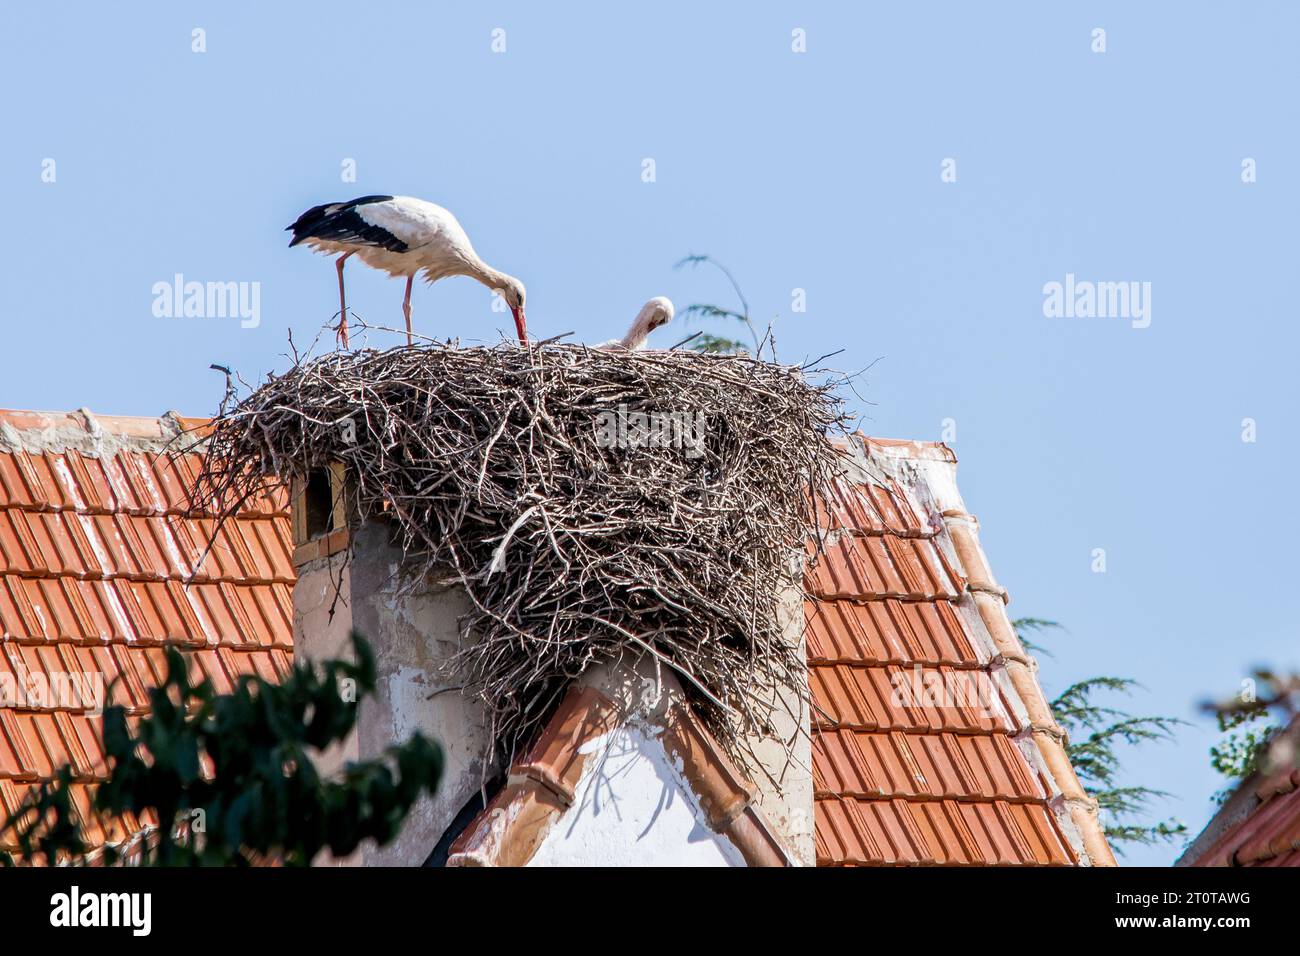 Un paio di cicogne bianche, Ciconia ciconia, grandi uccelli che si prendono cura del loro nido su un tetto a Ifrane, in Marocco durante i mesi estivi di riproduzione. Foto Stock